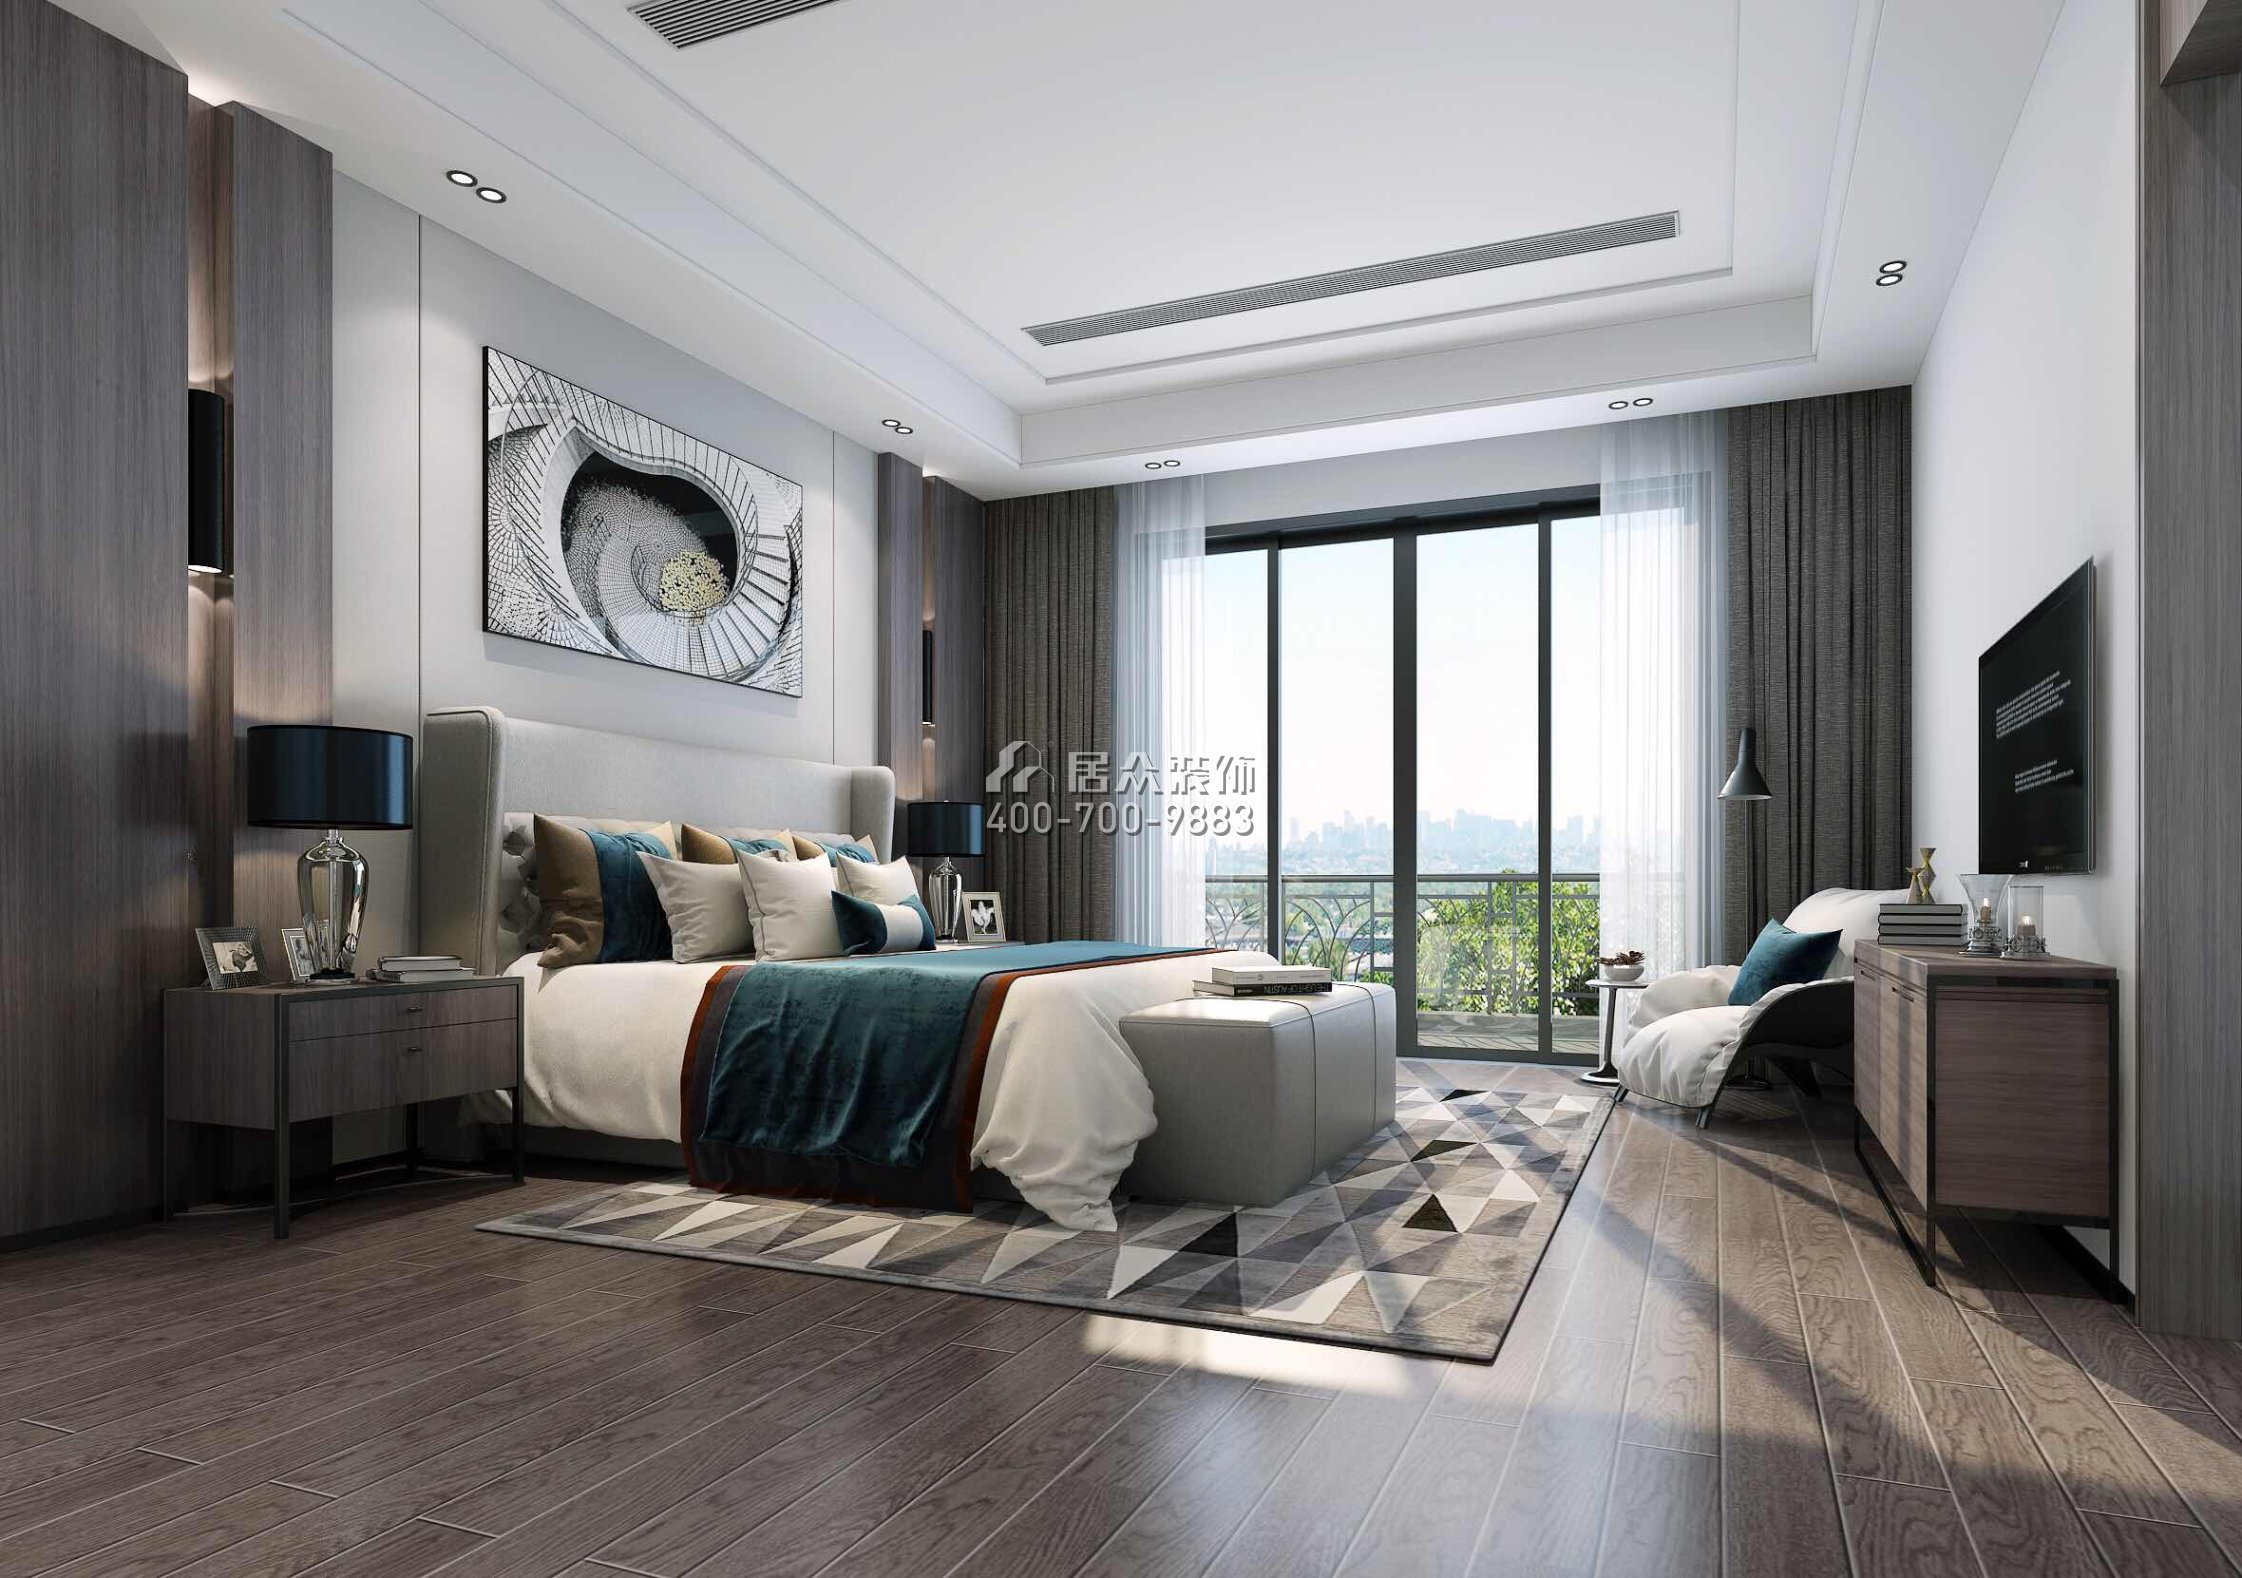 海逸豪庭321平方米现代简约风格别墅户型卧室装修效果图